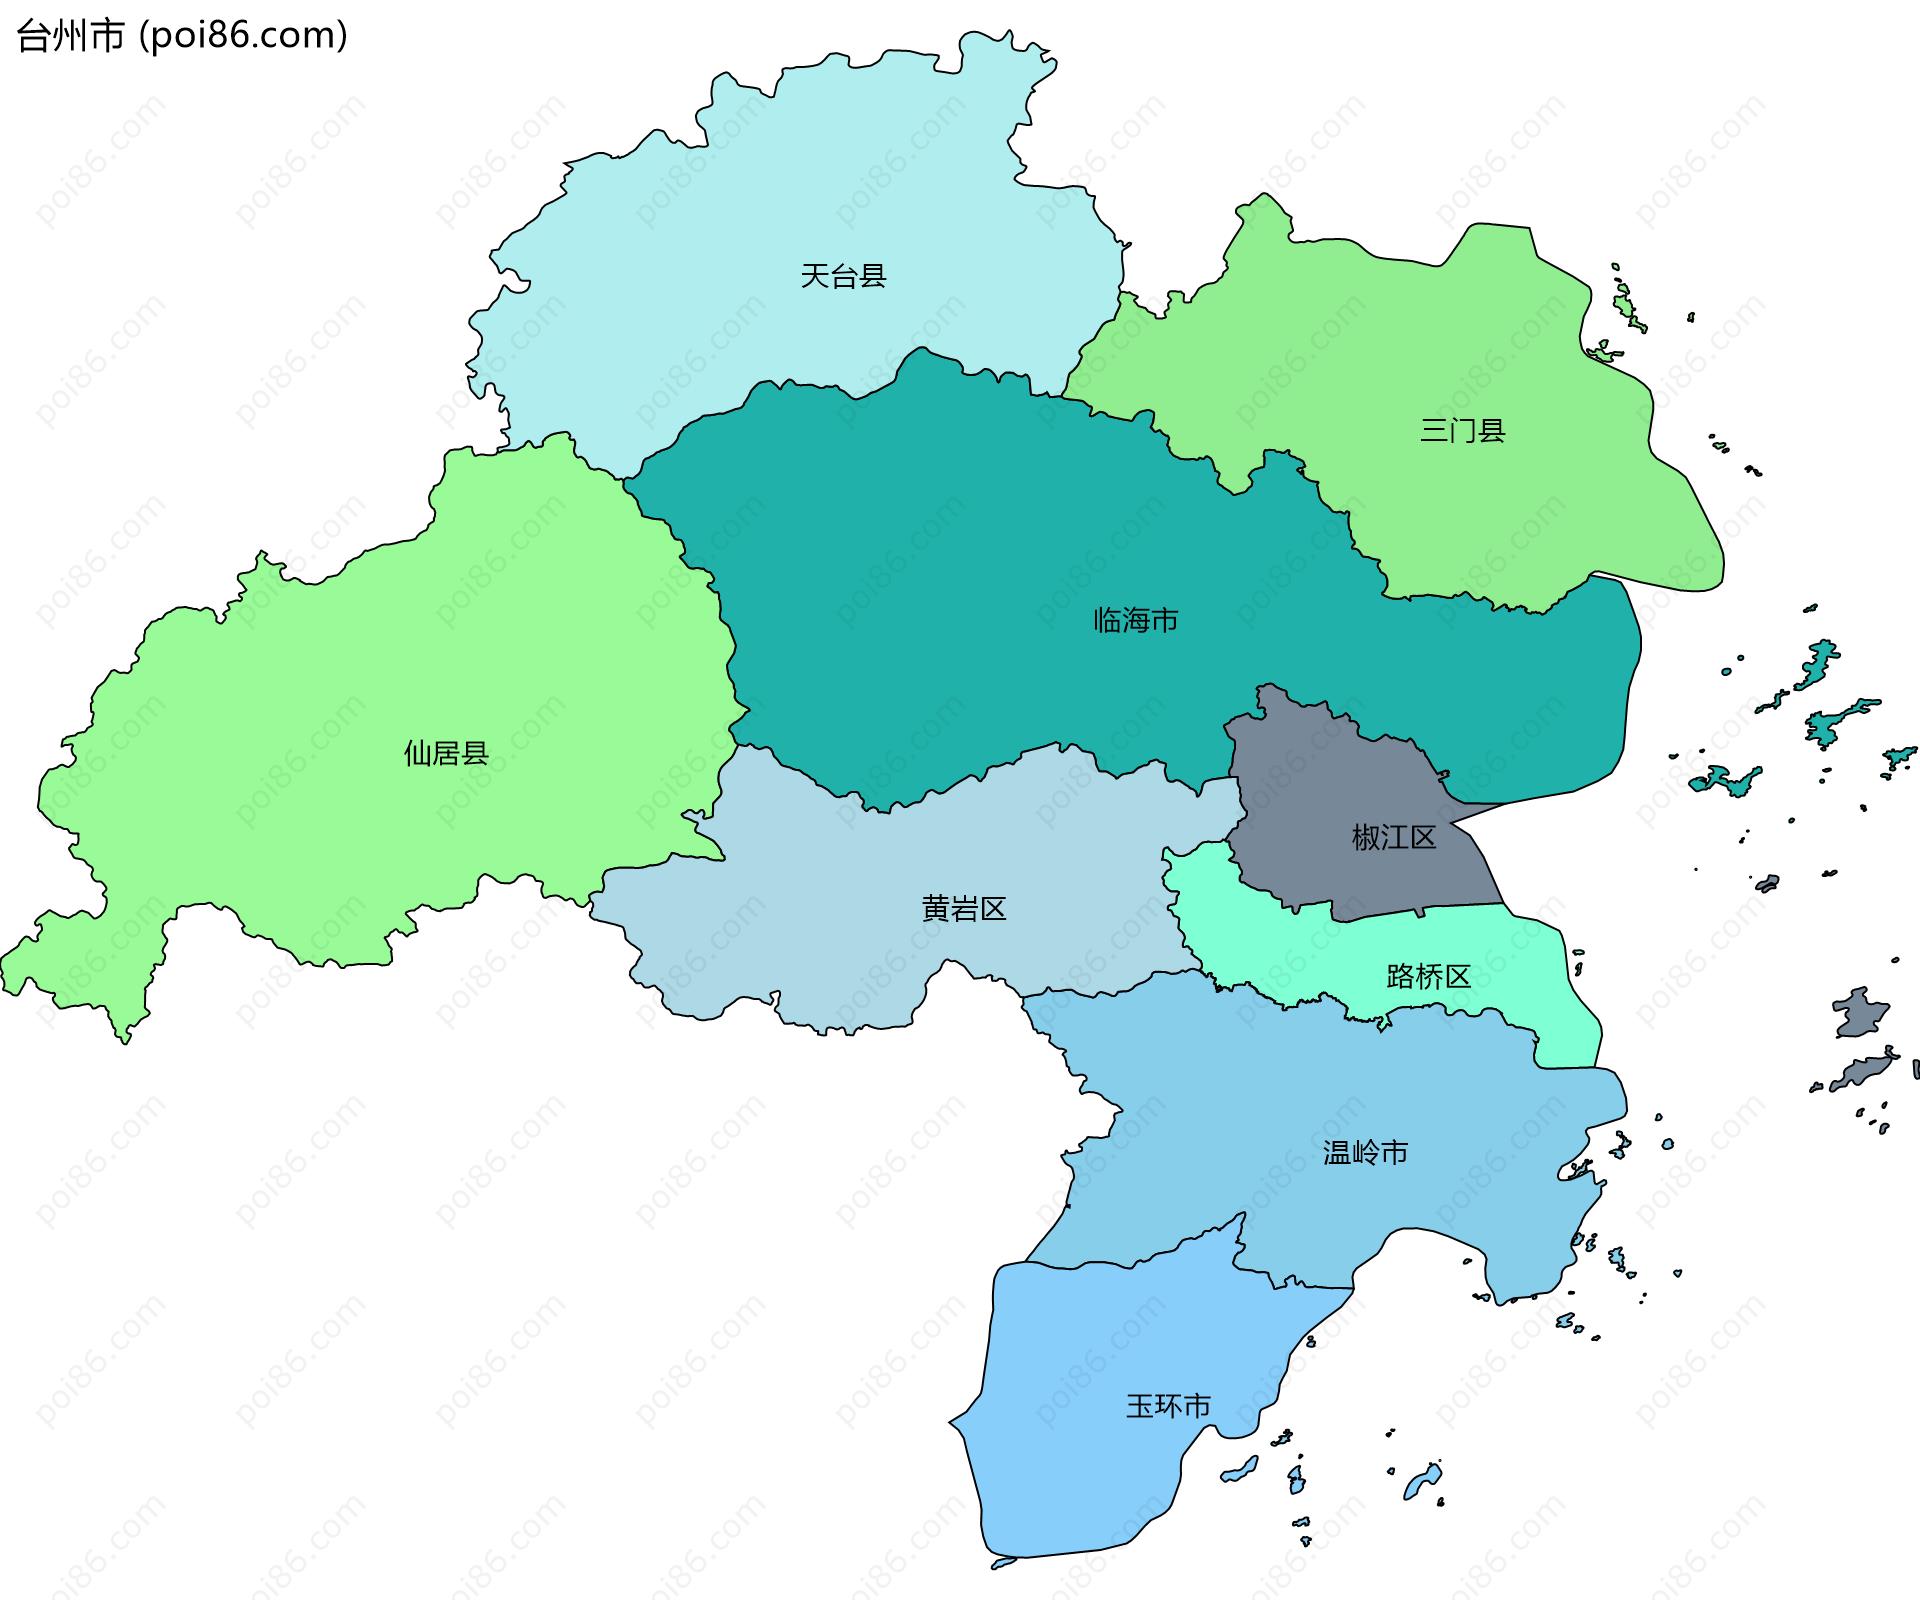 台州市边界地图